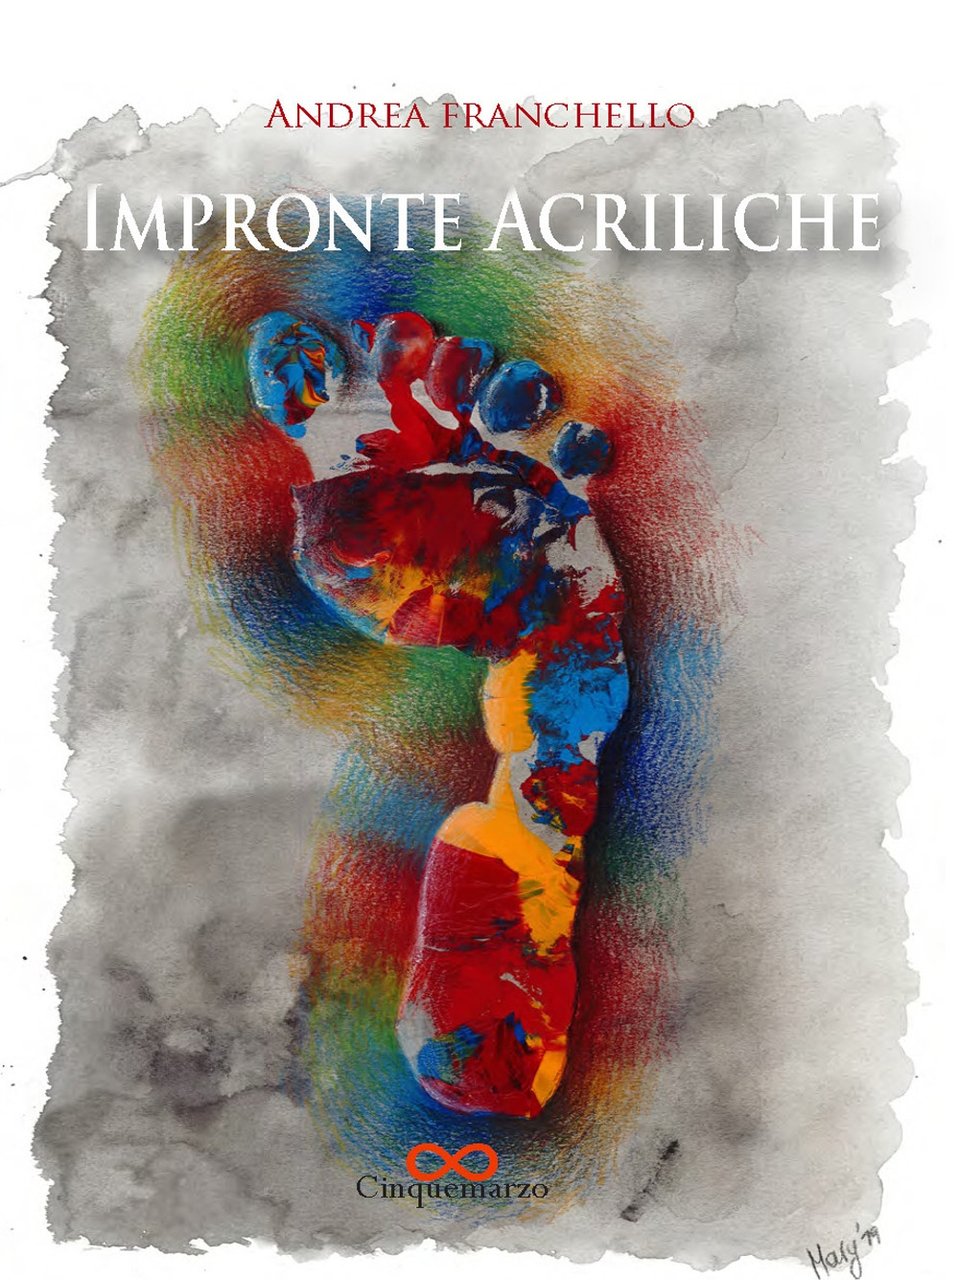 Impronte acriliche, Lido di Camaiore, Cinquemarzo, 2019